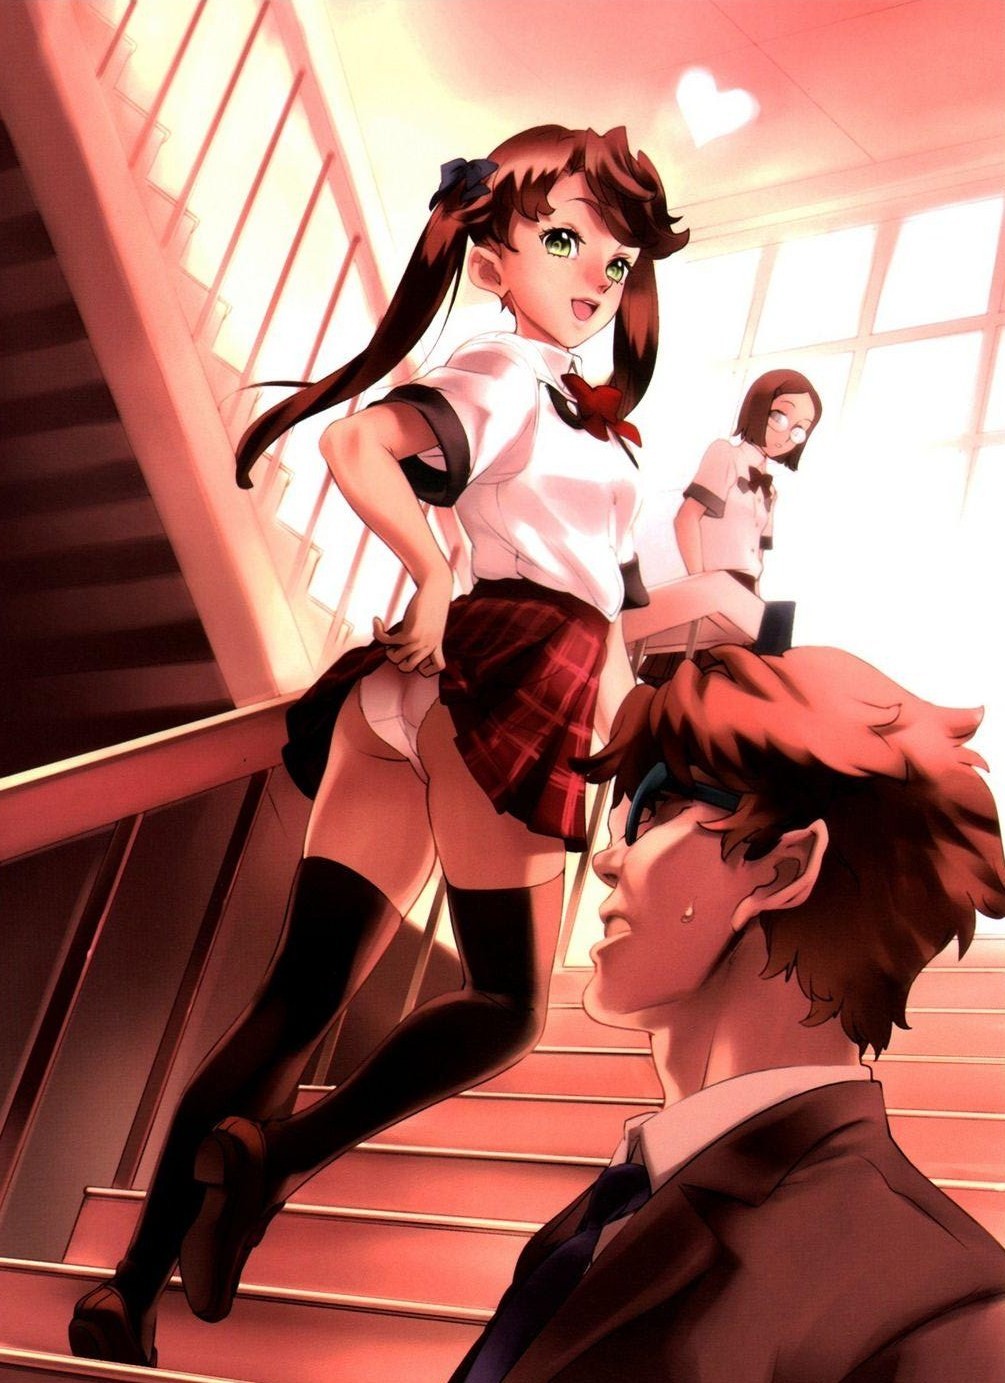 Anime Hentai School Girl - Sss multiple girls pantis butt school girls anime hentai ...